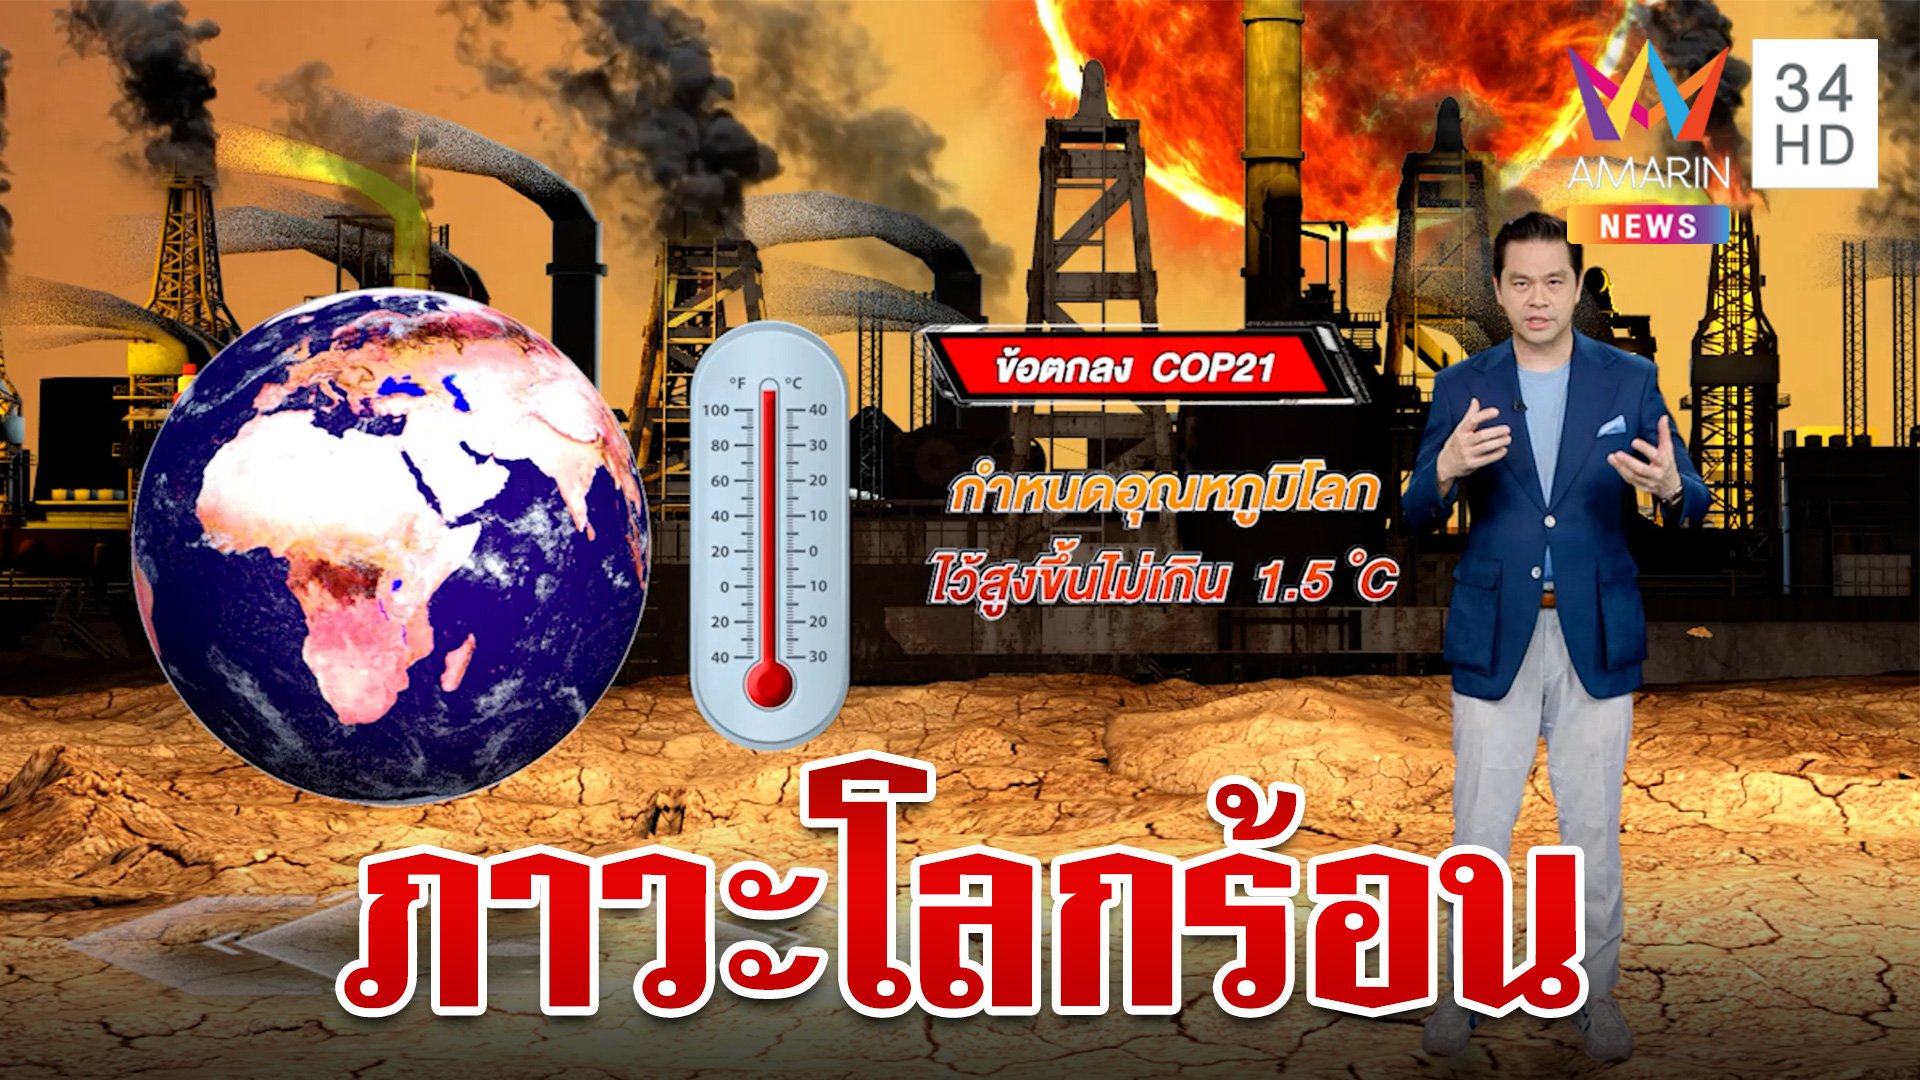 โลกร้อนขึ้นทำไมทั่วโลกต้องวิตก แล้วไทยต้องรับมืออย่างไร | ทุบโต๊ะข่าว | 11 ส.ค. 66 | AMARIN TVHD34